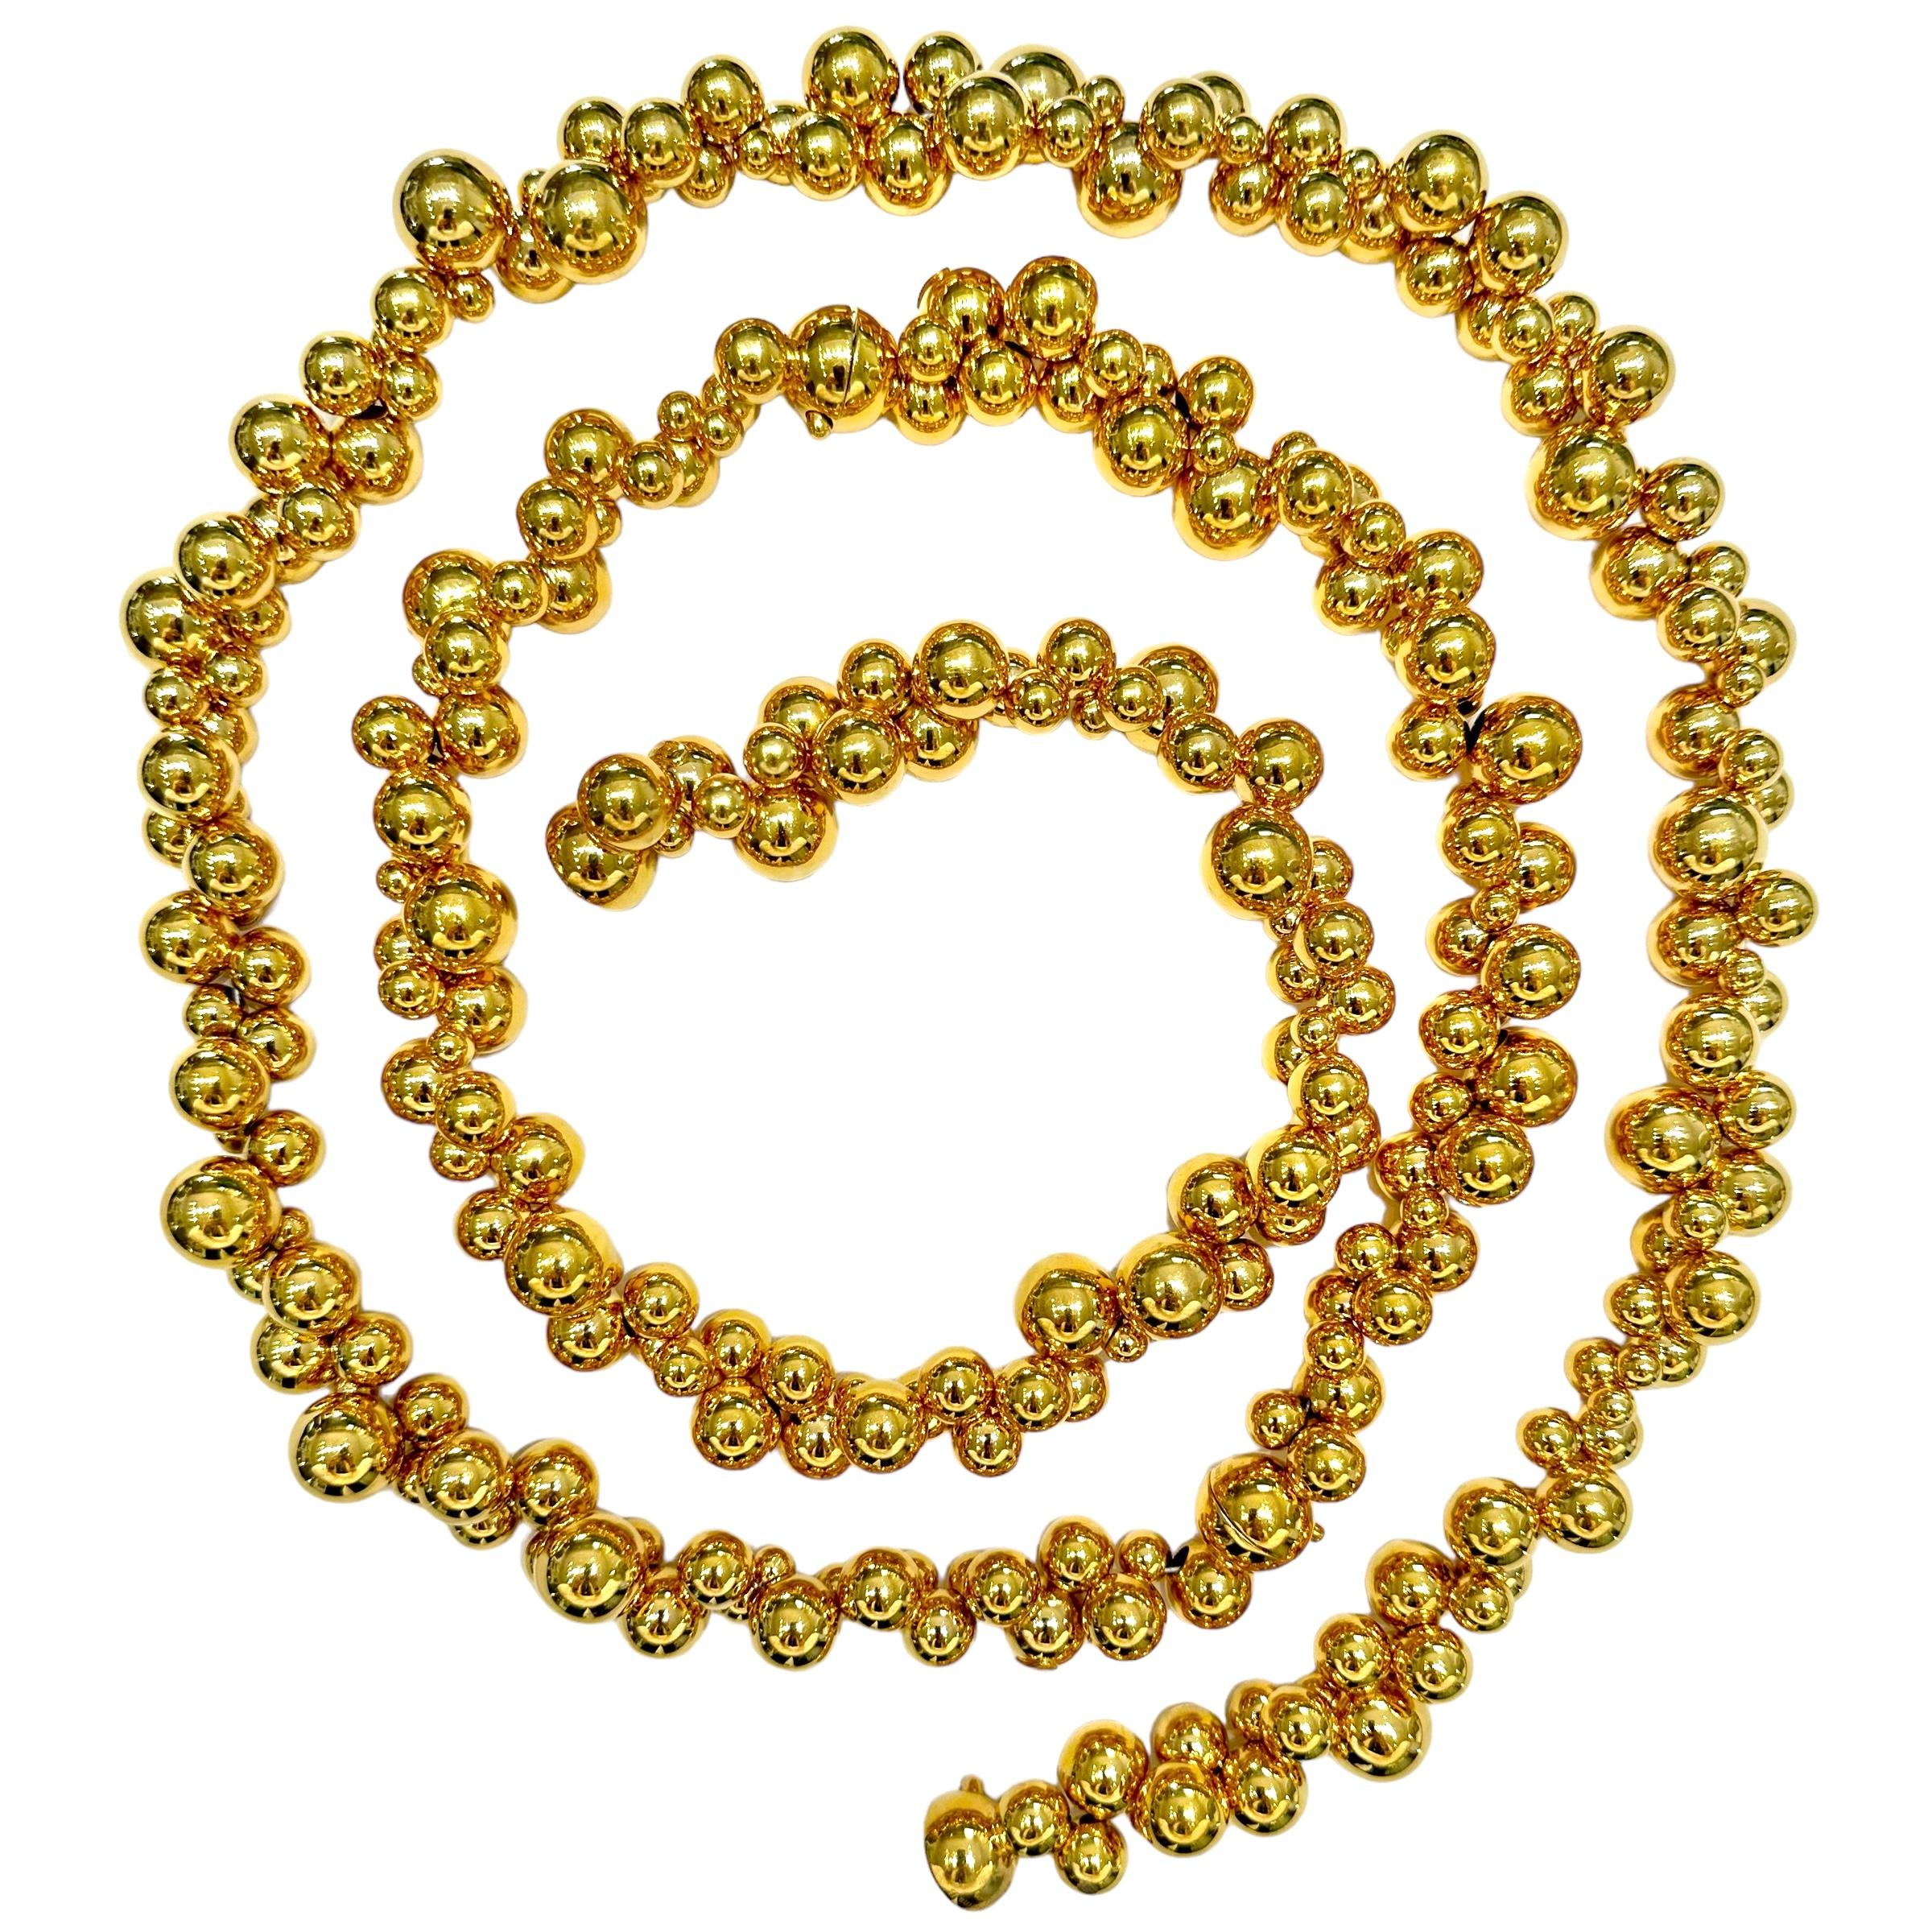 Diese besondere Marina B Atomo Halskette aus 18k Gelbgold, Armband Kombination wirklich  steht für  der Inbegriff dieses Modells. Wenn sie als einzelner Strang getragen wird, misst sie erstaunliche 49 Zoll in der Länge. Getrennt besteht es aus drei